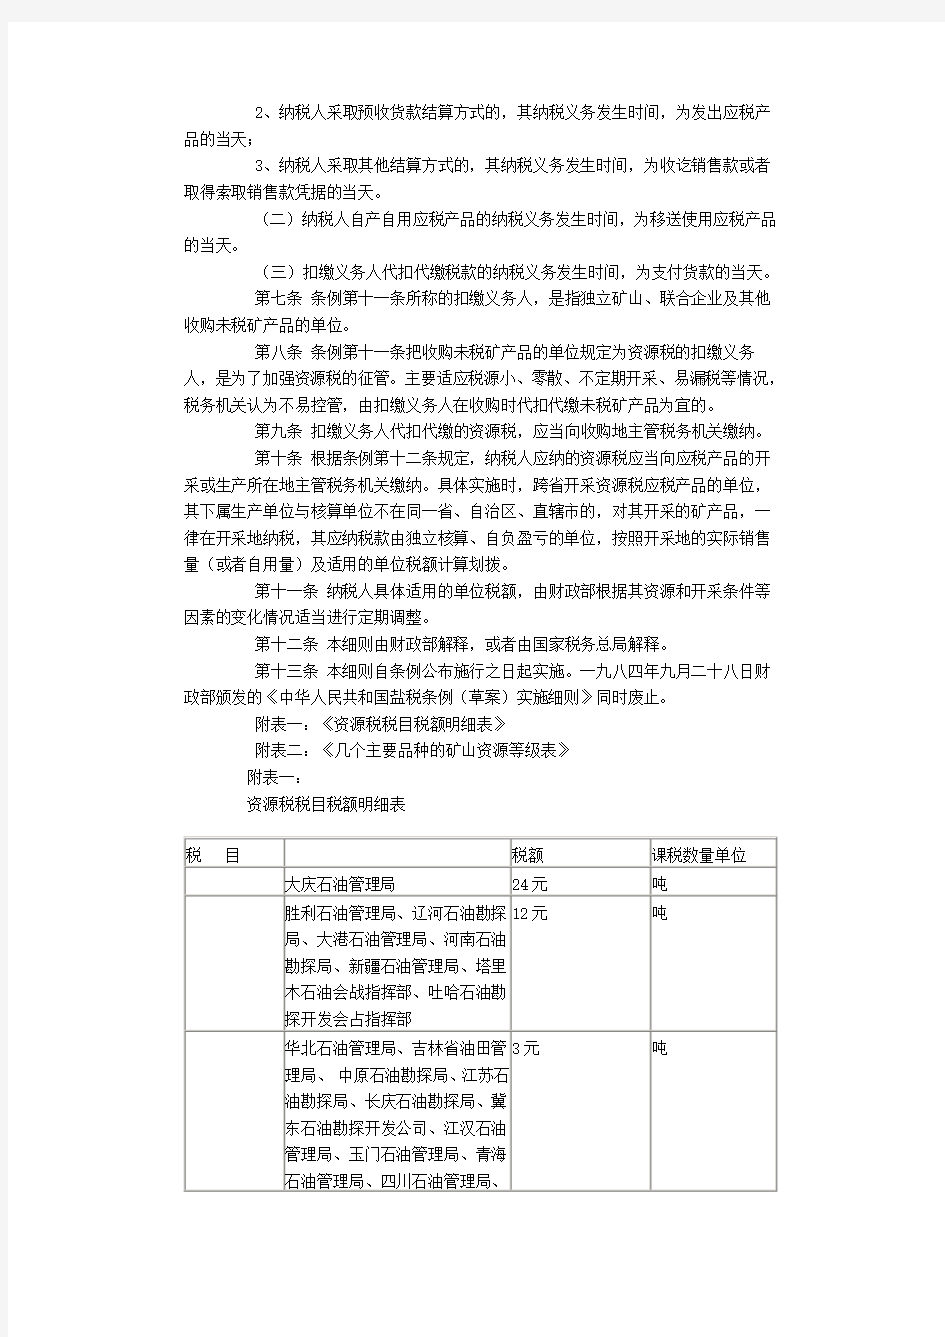 中华人民共和国资源税暂行条例实施细则